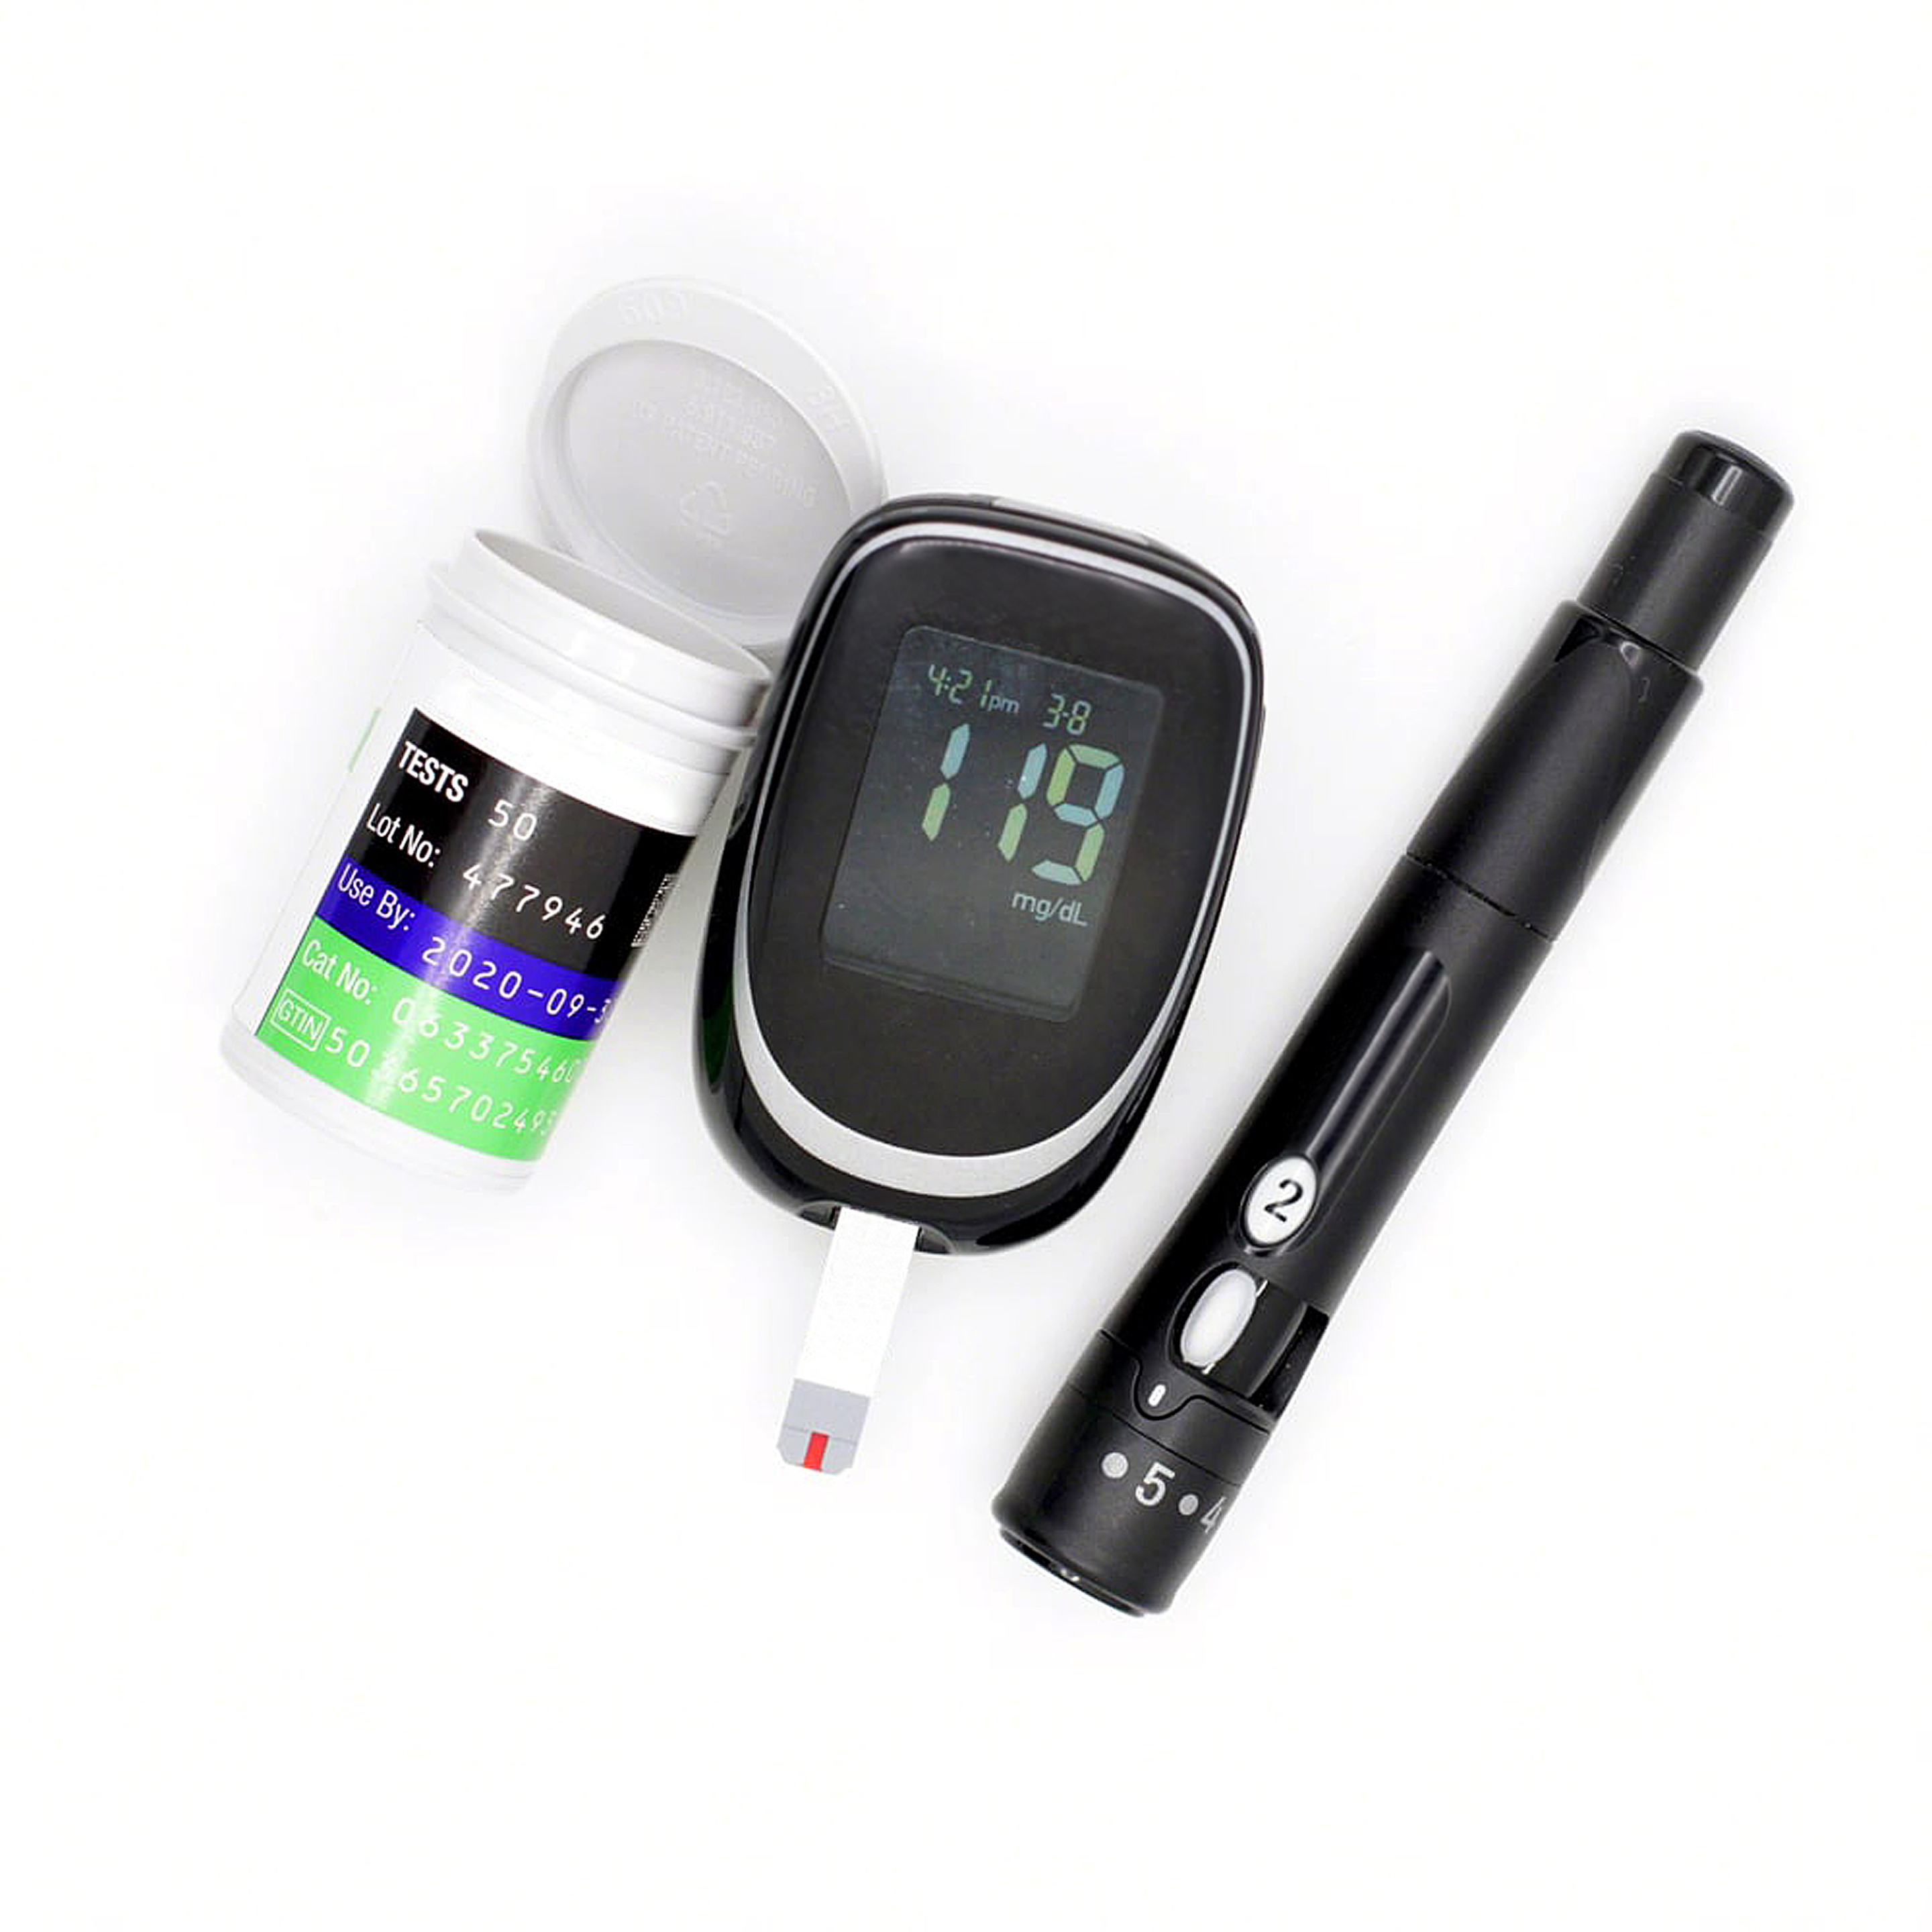 Tiras reactivas para la diabetes y medidor de glucosa en sangre